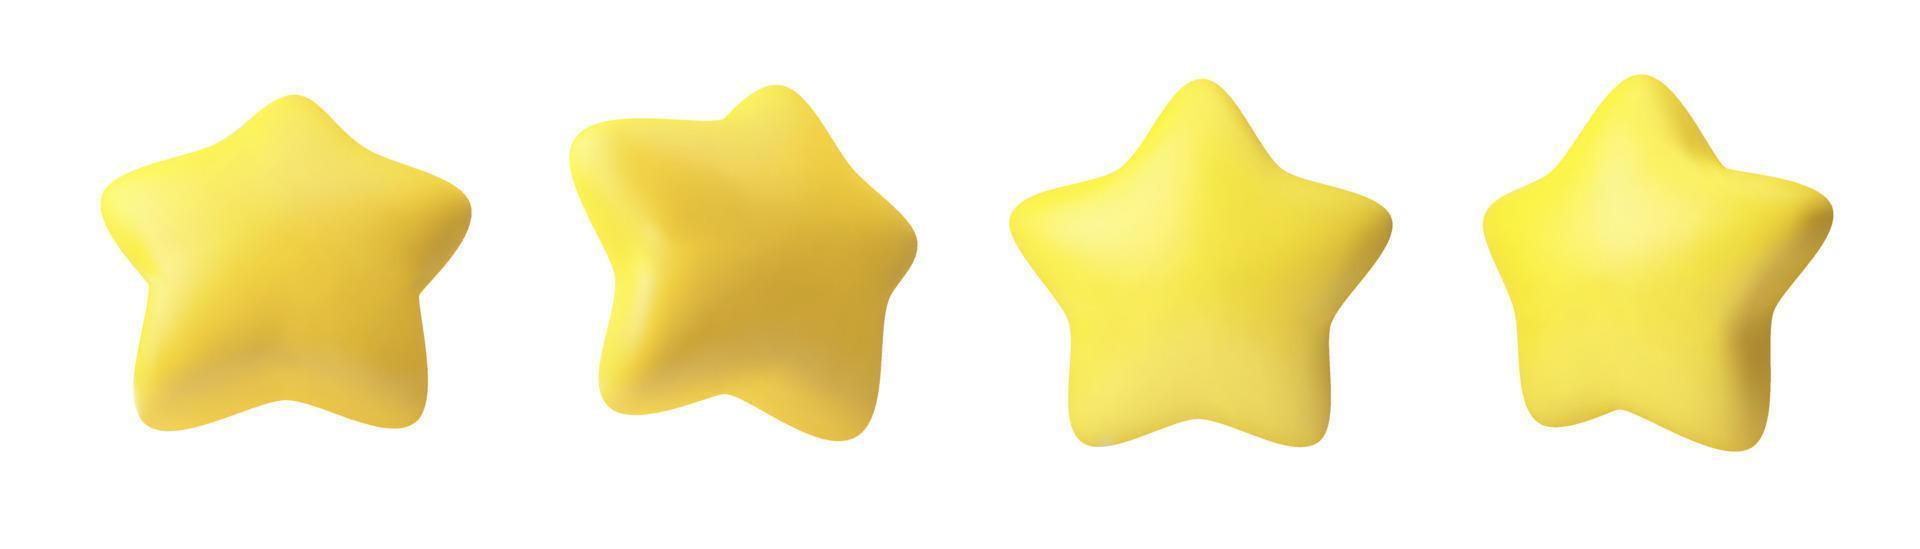 vectorillustratie van 3D-realistische mollige sterren. een set gele sterren van verschillende kanten voor mobiele applicaties en website-ontwerp. vector